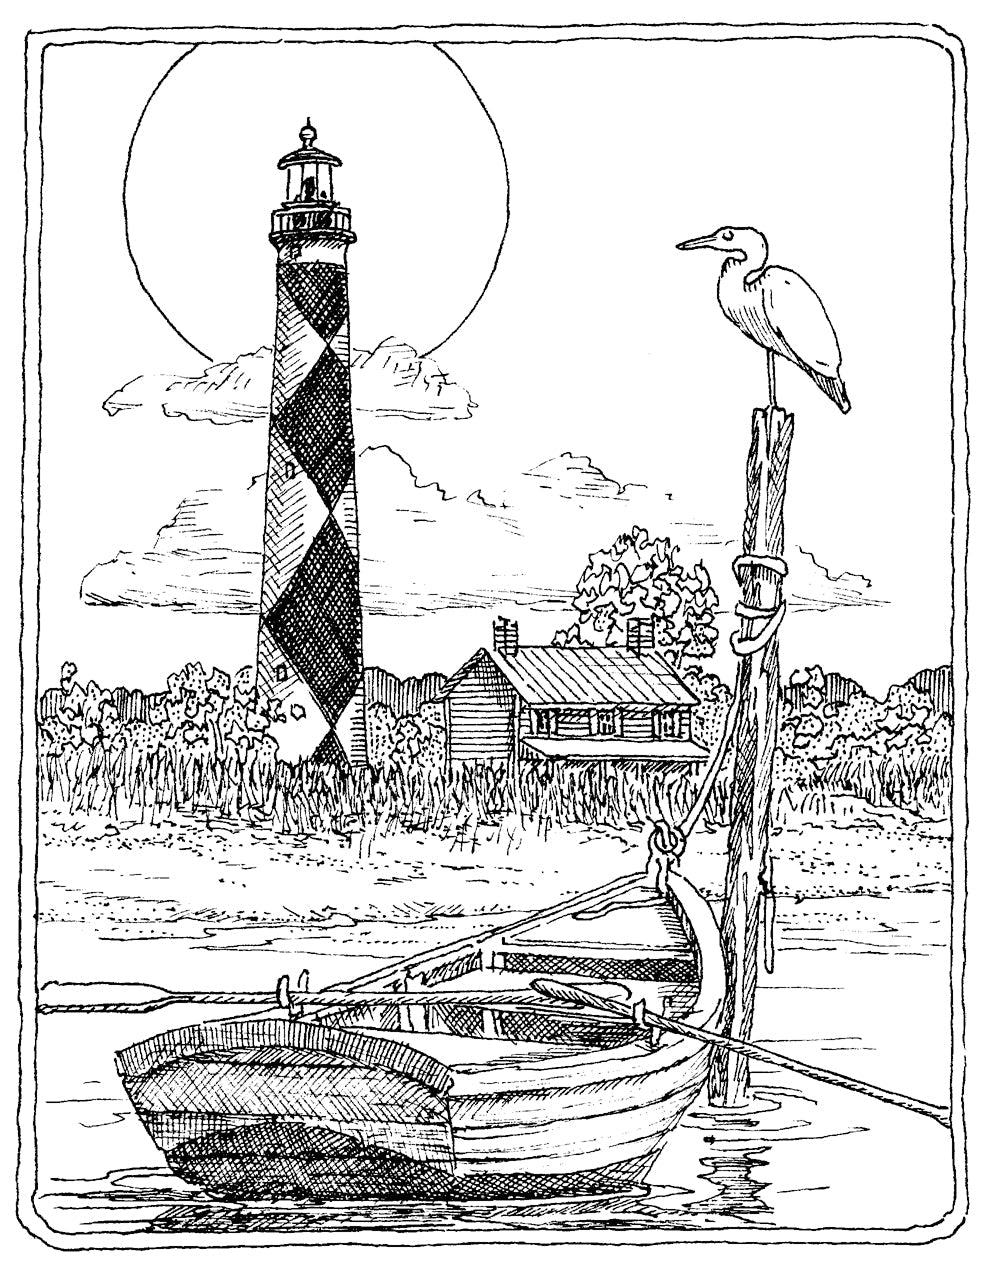 H1904-DG Cape Lookout Lighthouse